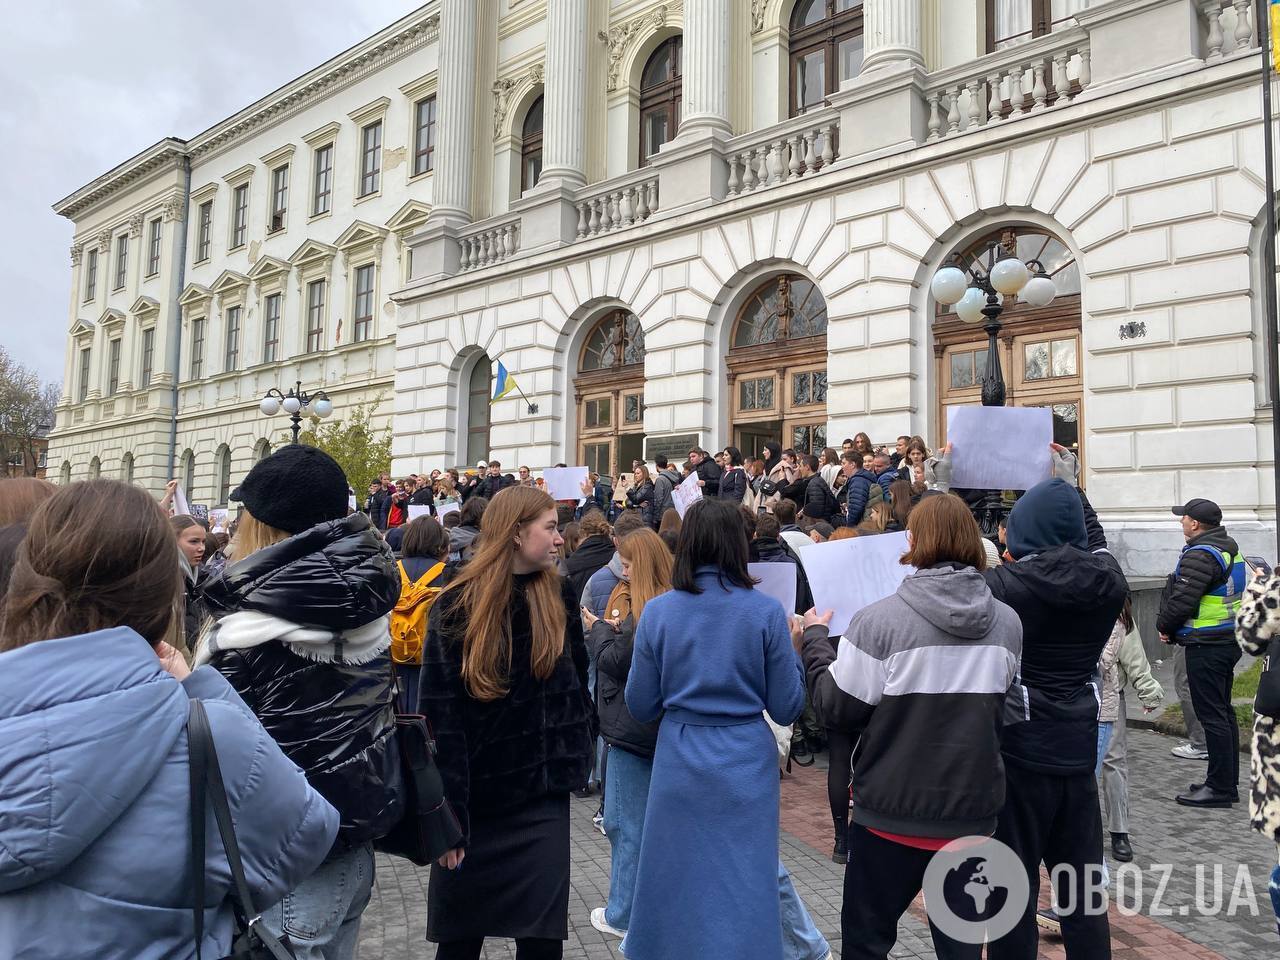 "Ганьбить Україну": у Львові студенти вийшли на мітинг з вимогою звільнення Фаріон. Що відомо про скандали з її участю